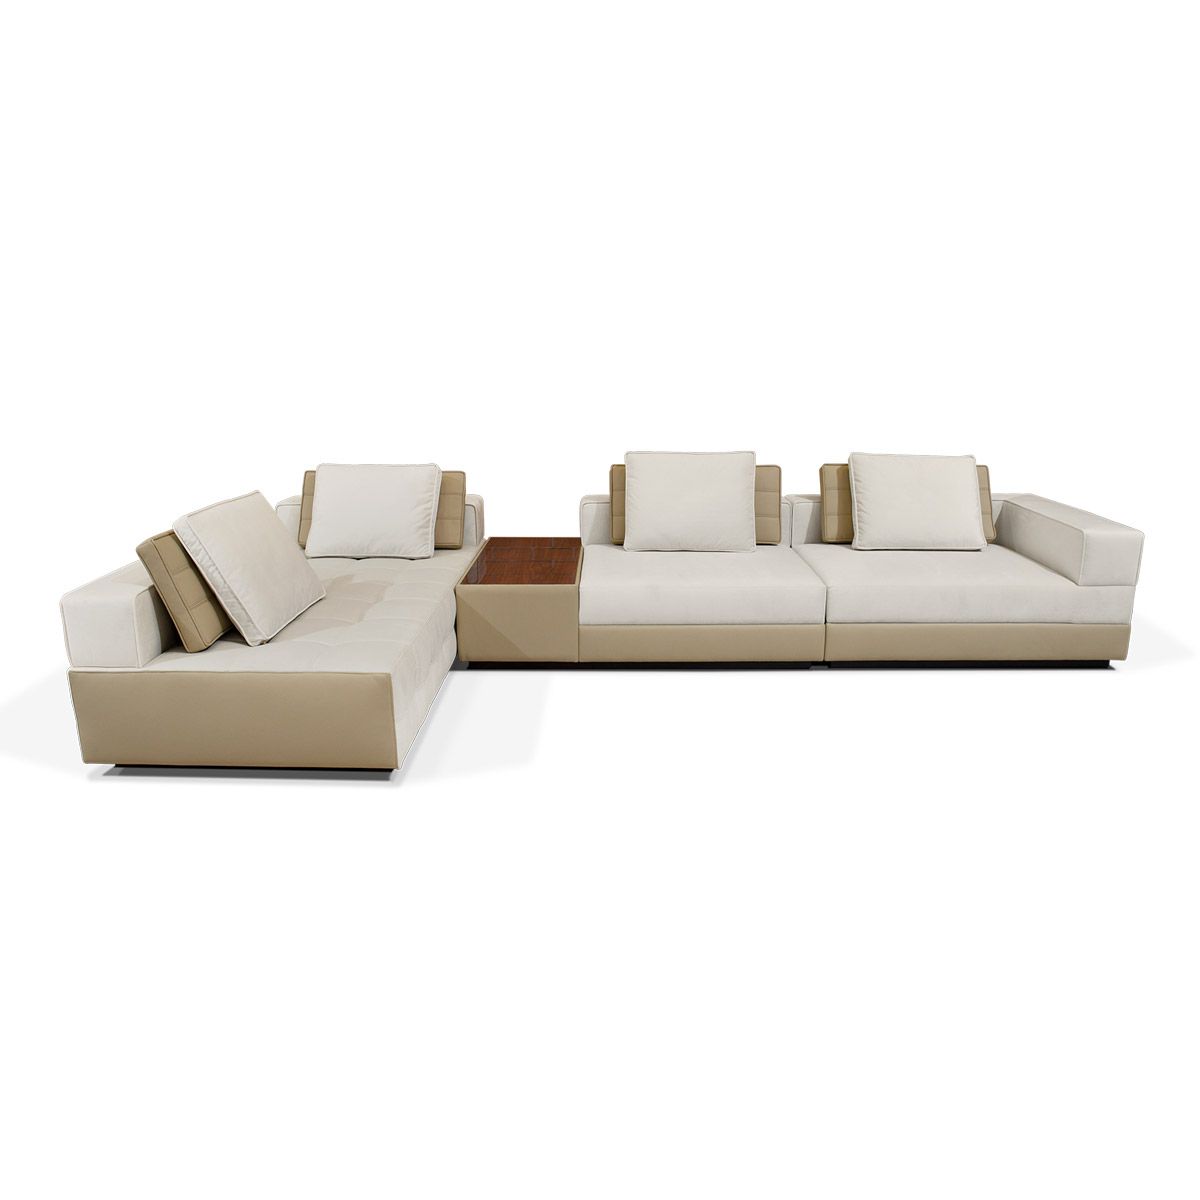 Capuchin Modular Sofa